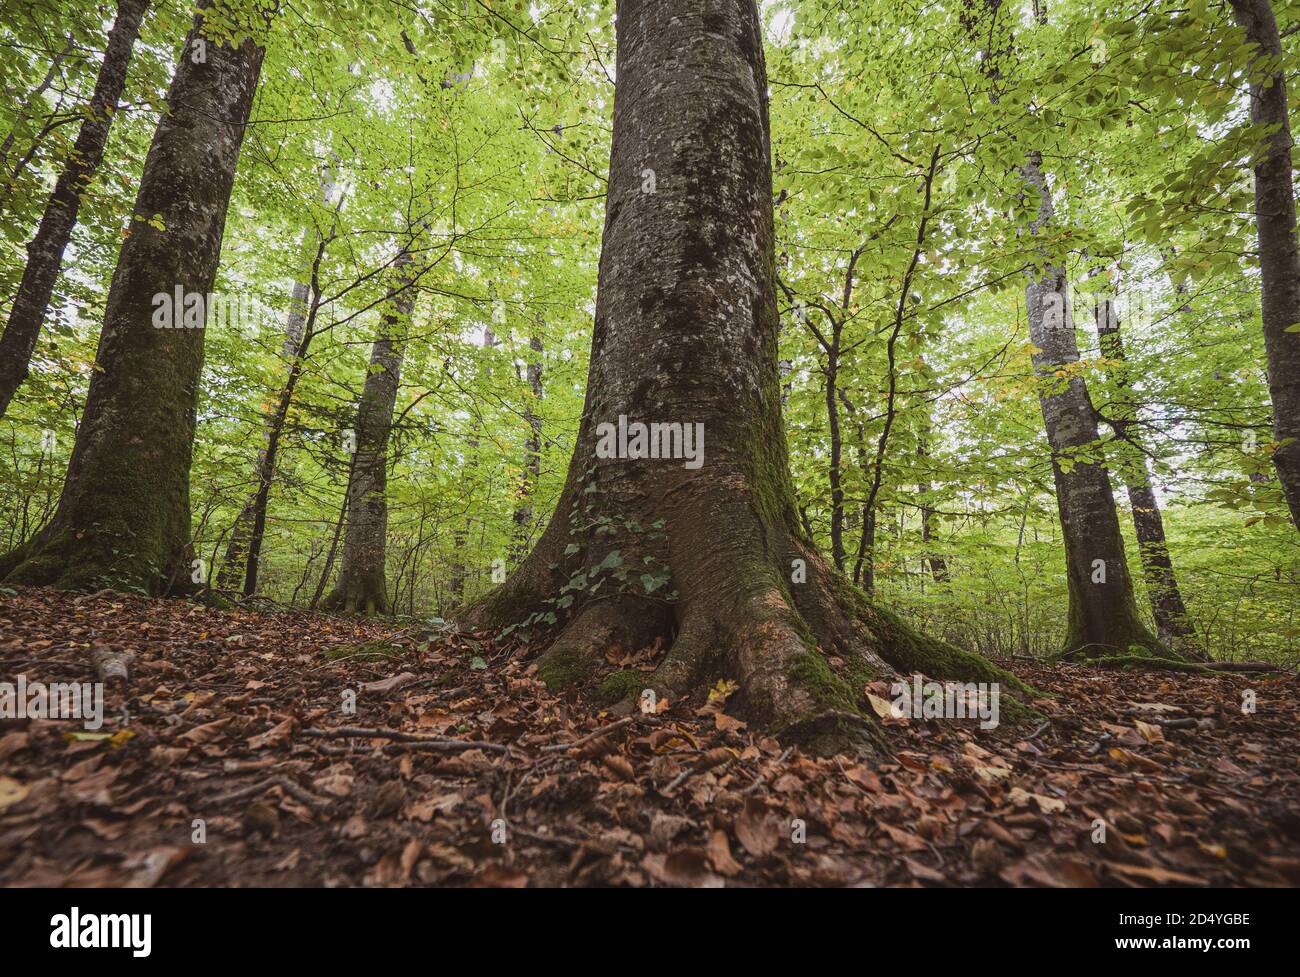 Tiro angular de árboles altos y troncos y ramas en primer plano en un bosque otoñal cubierto de hojas caídas en un día atmosférico exuberante. Foto de stock